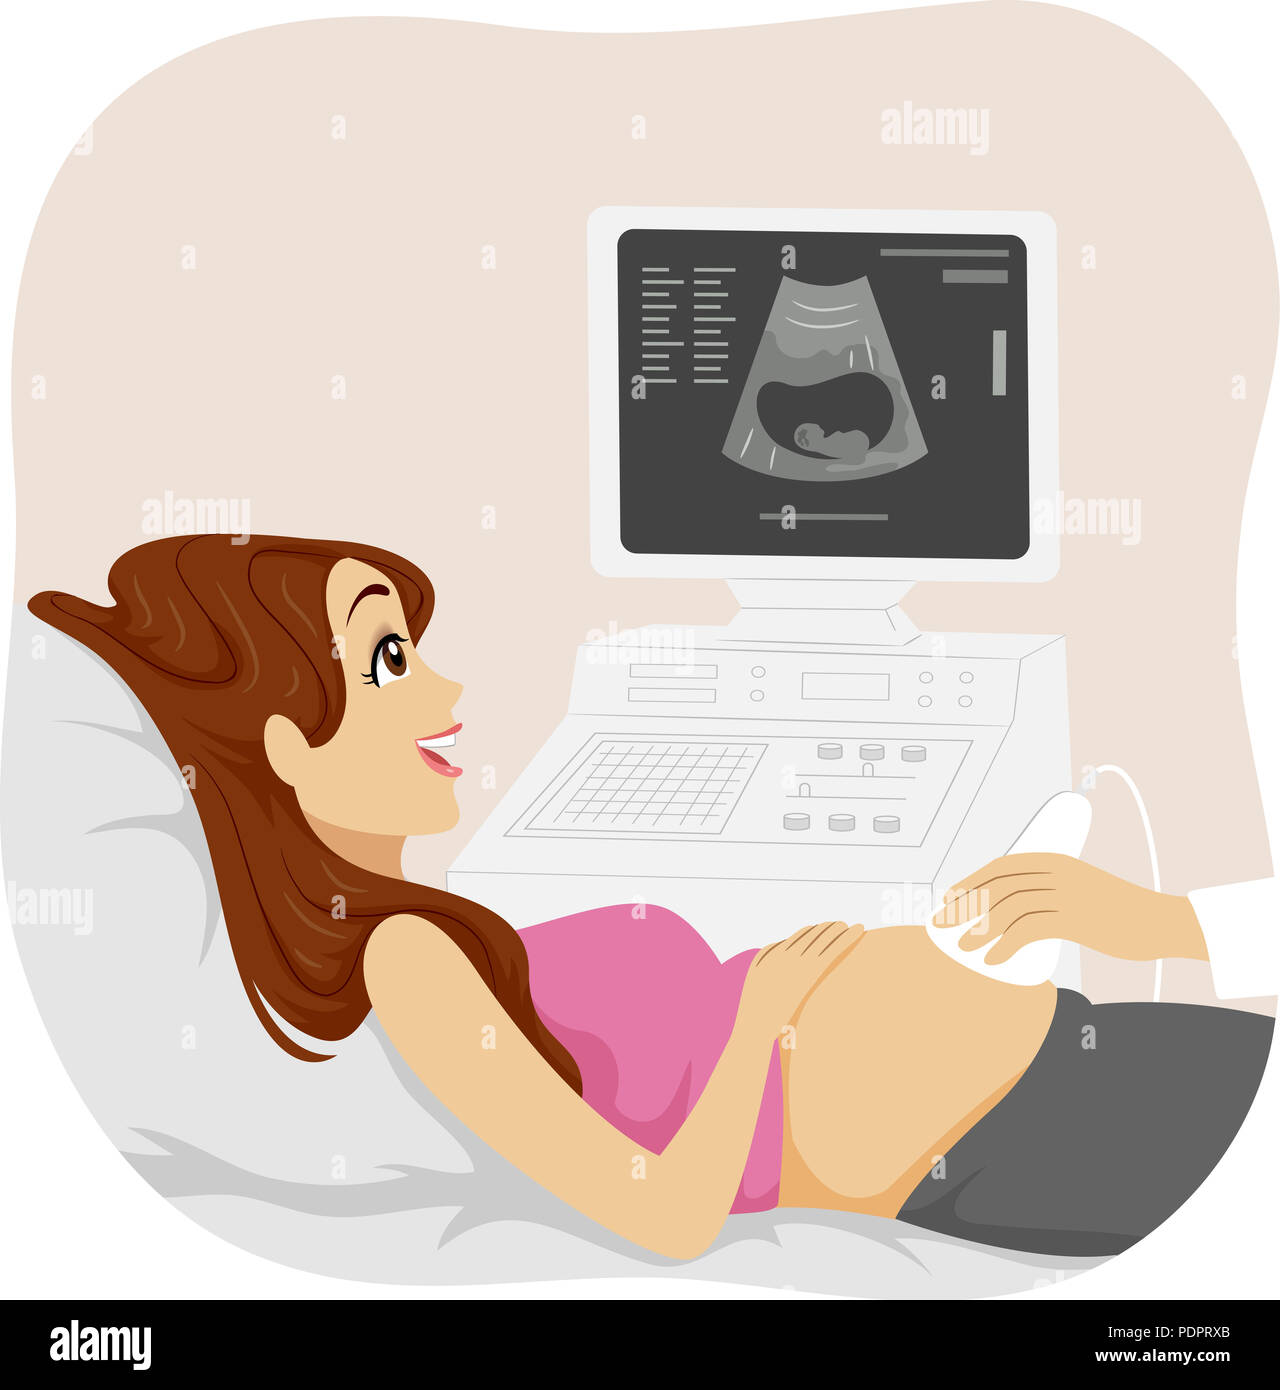 Illustrazione di una giovane ragazza incinta avente il suo ecografo Foto Stock